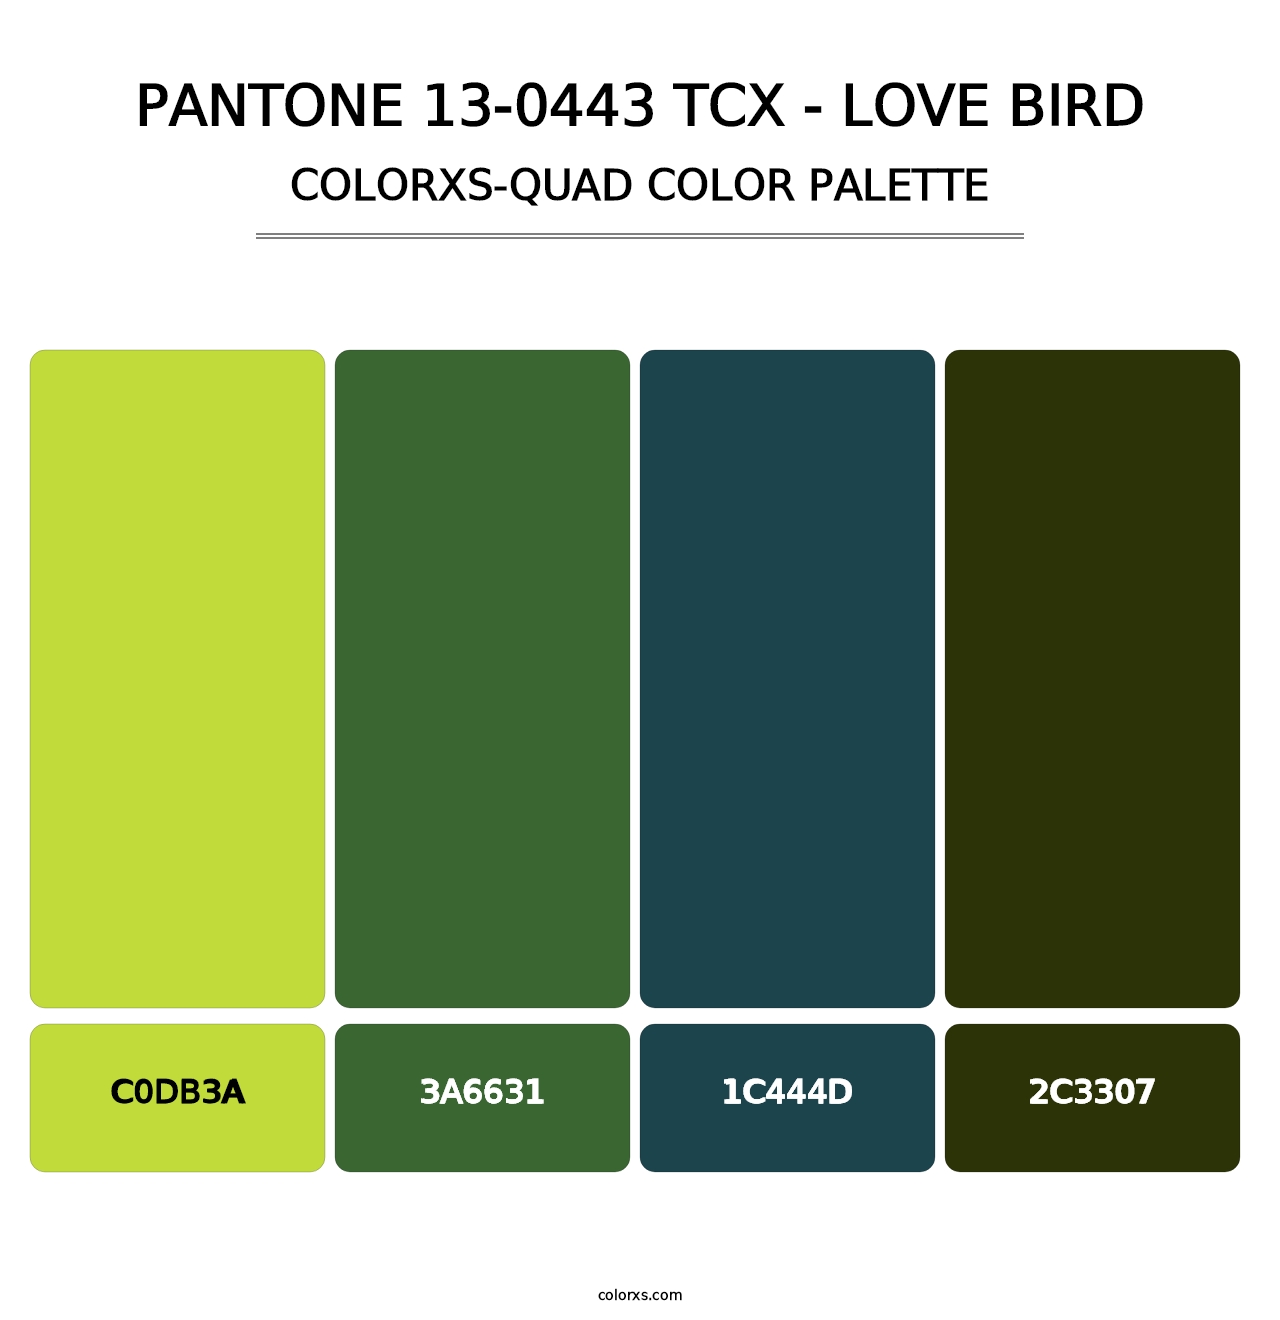 PANTONE 13-0443 TCX - Love Bird - Colorxs Quad Palette